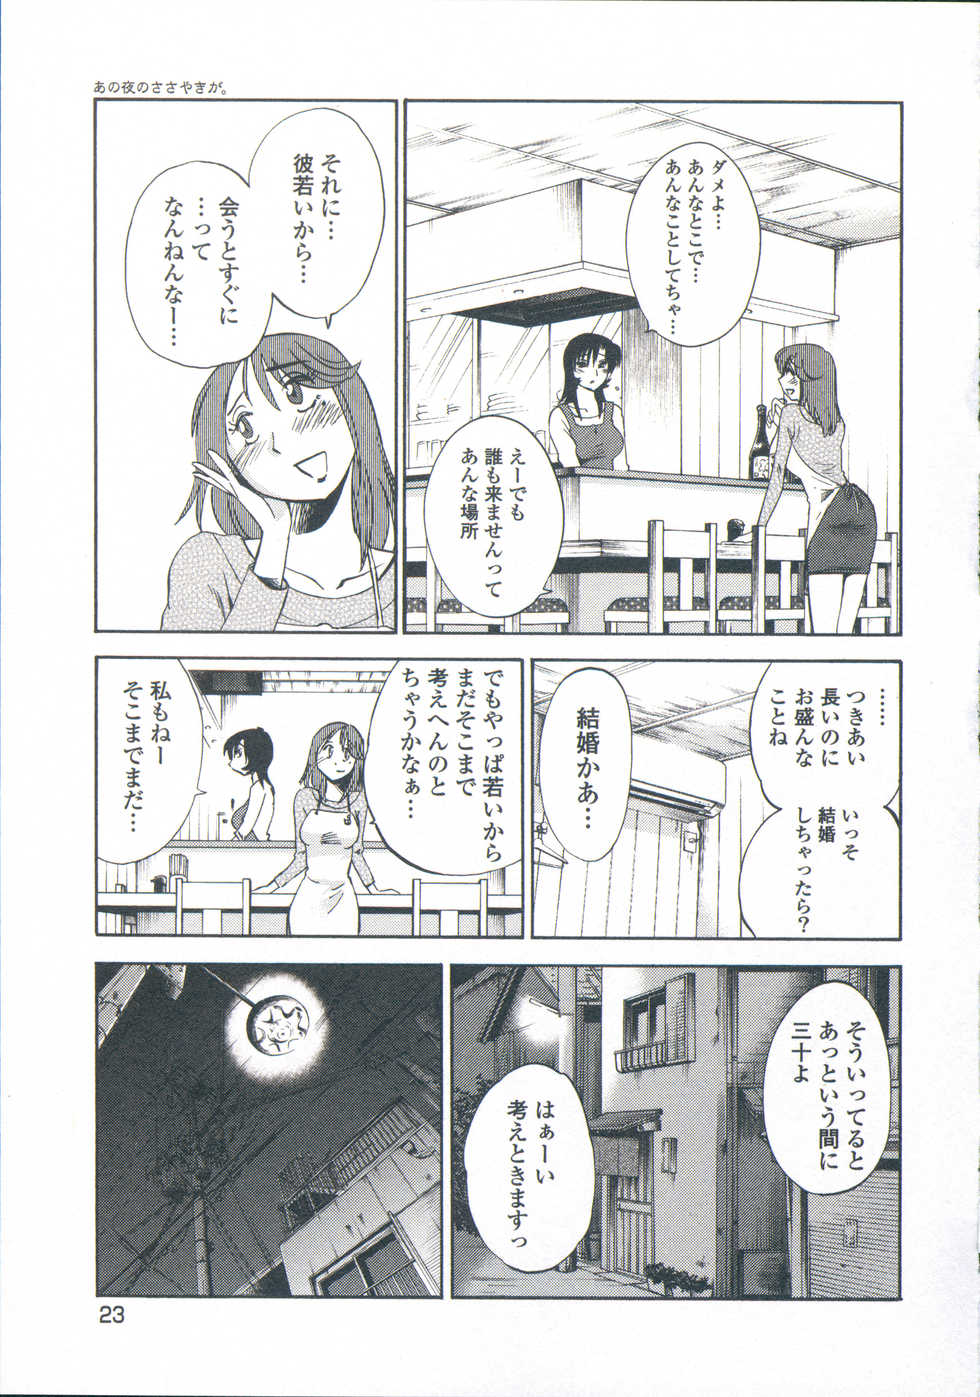 [TsuyaTsuya] Ano Yoru no Sasayaki ga. - De cette nuit, le murmure - Page 26